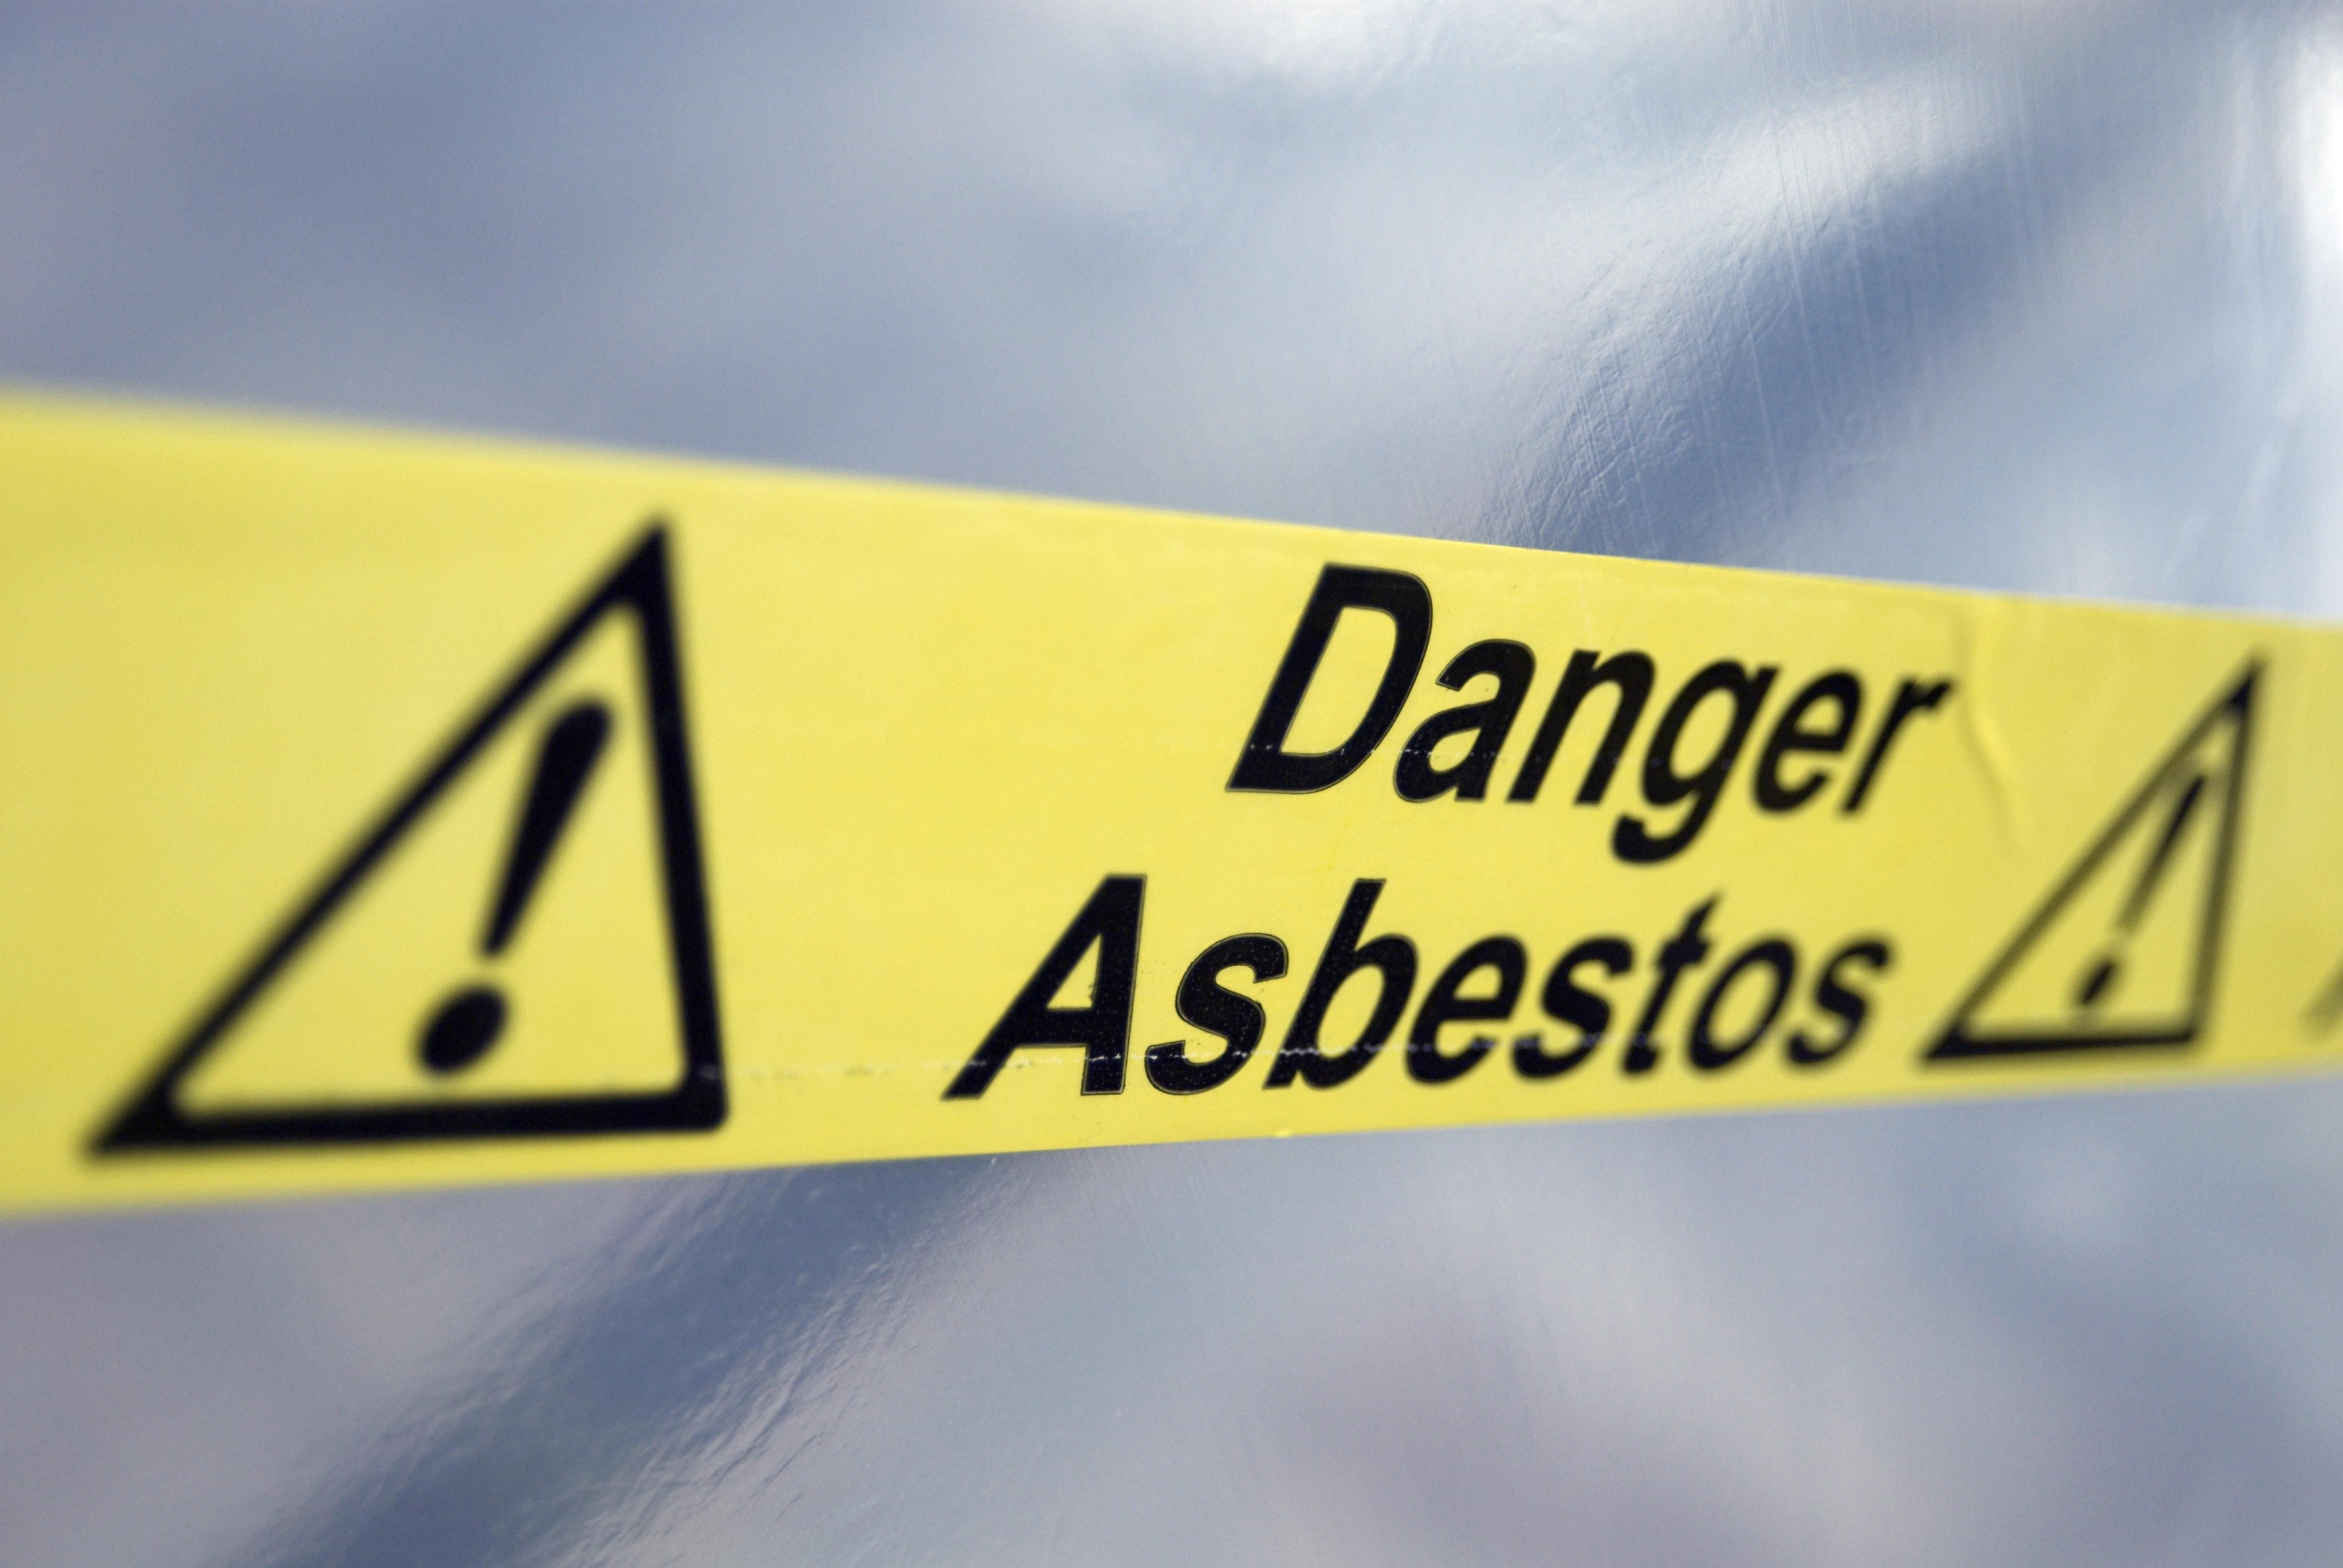 Warning tape that reads "Danger Asbestos"